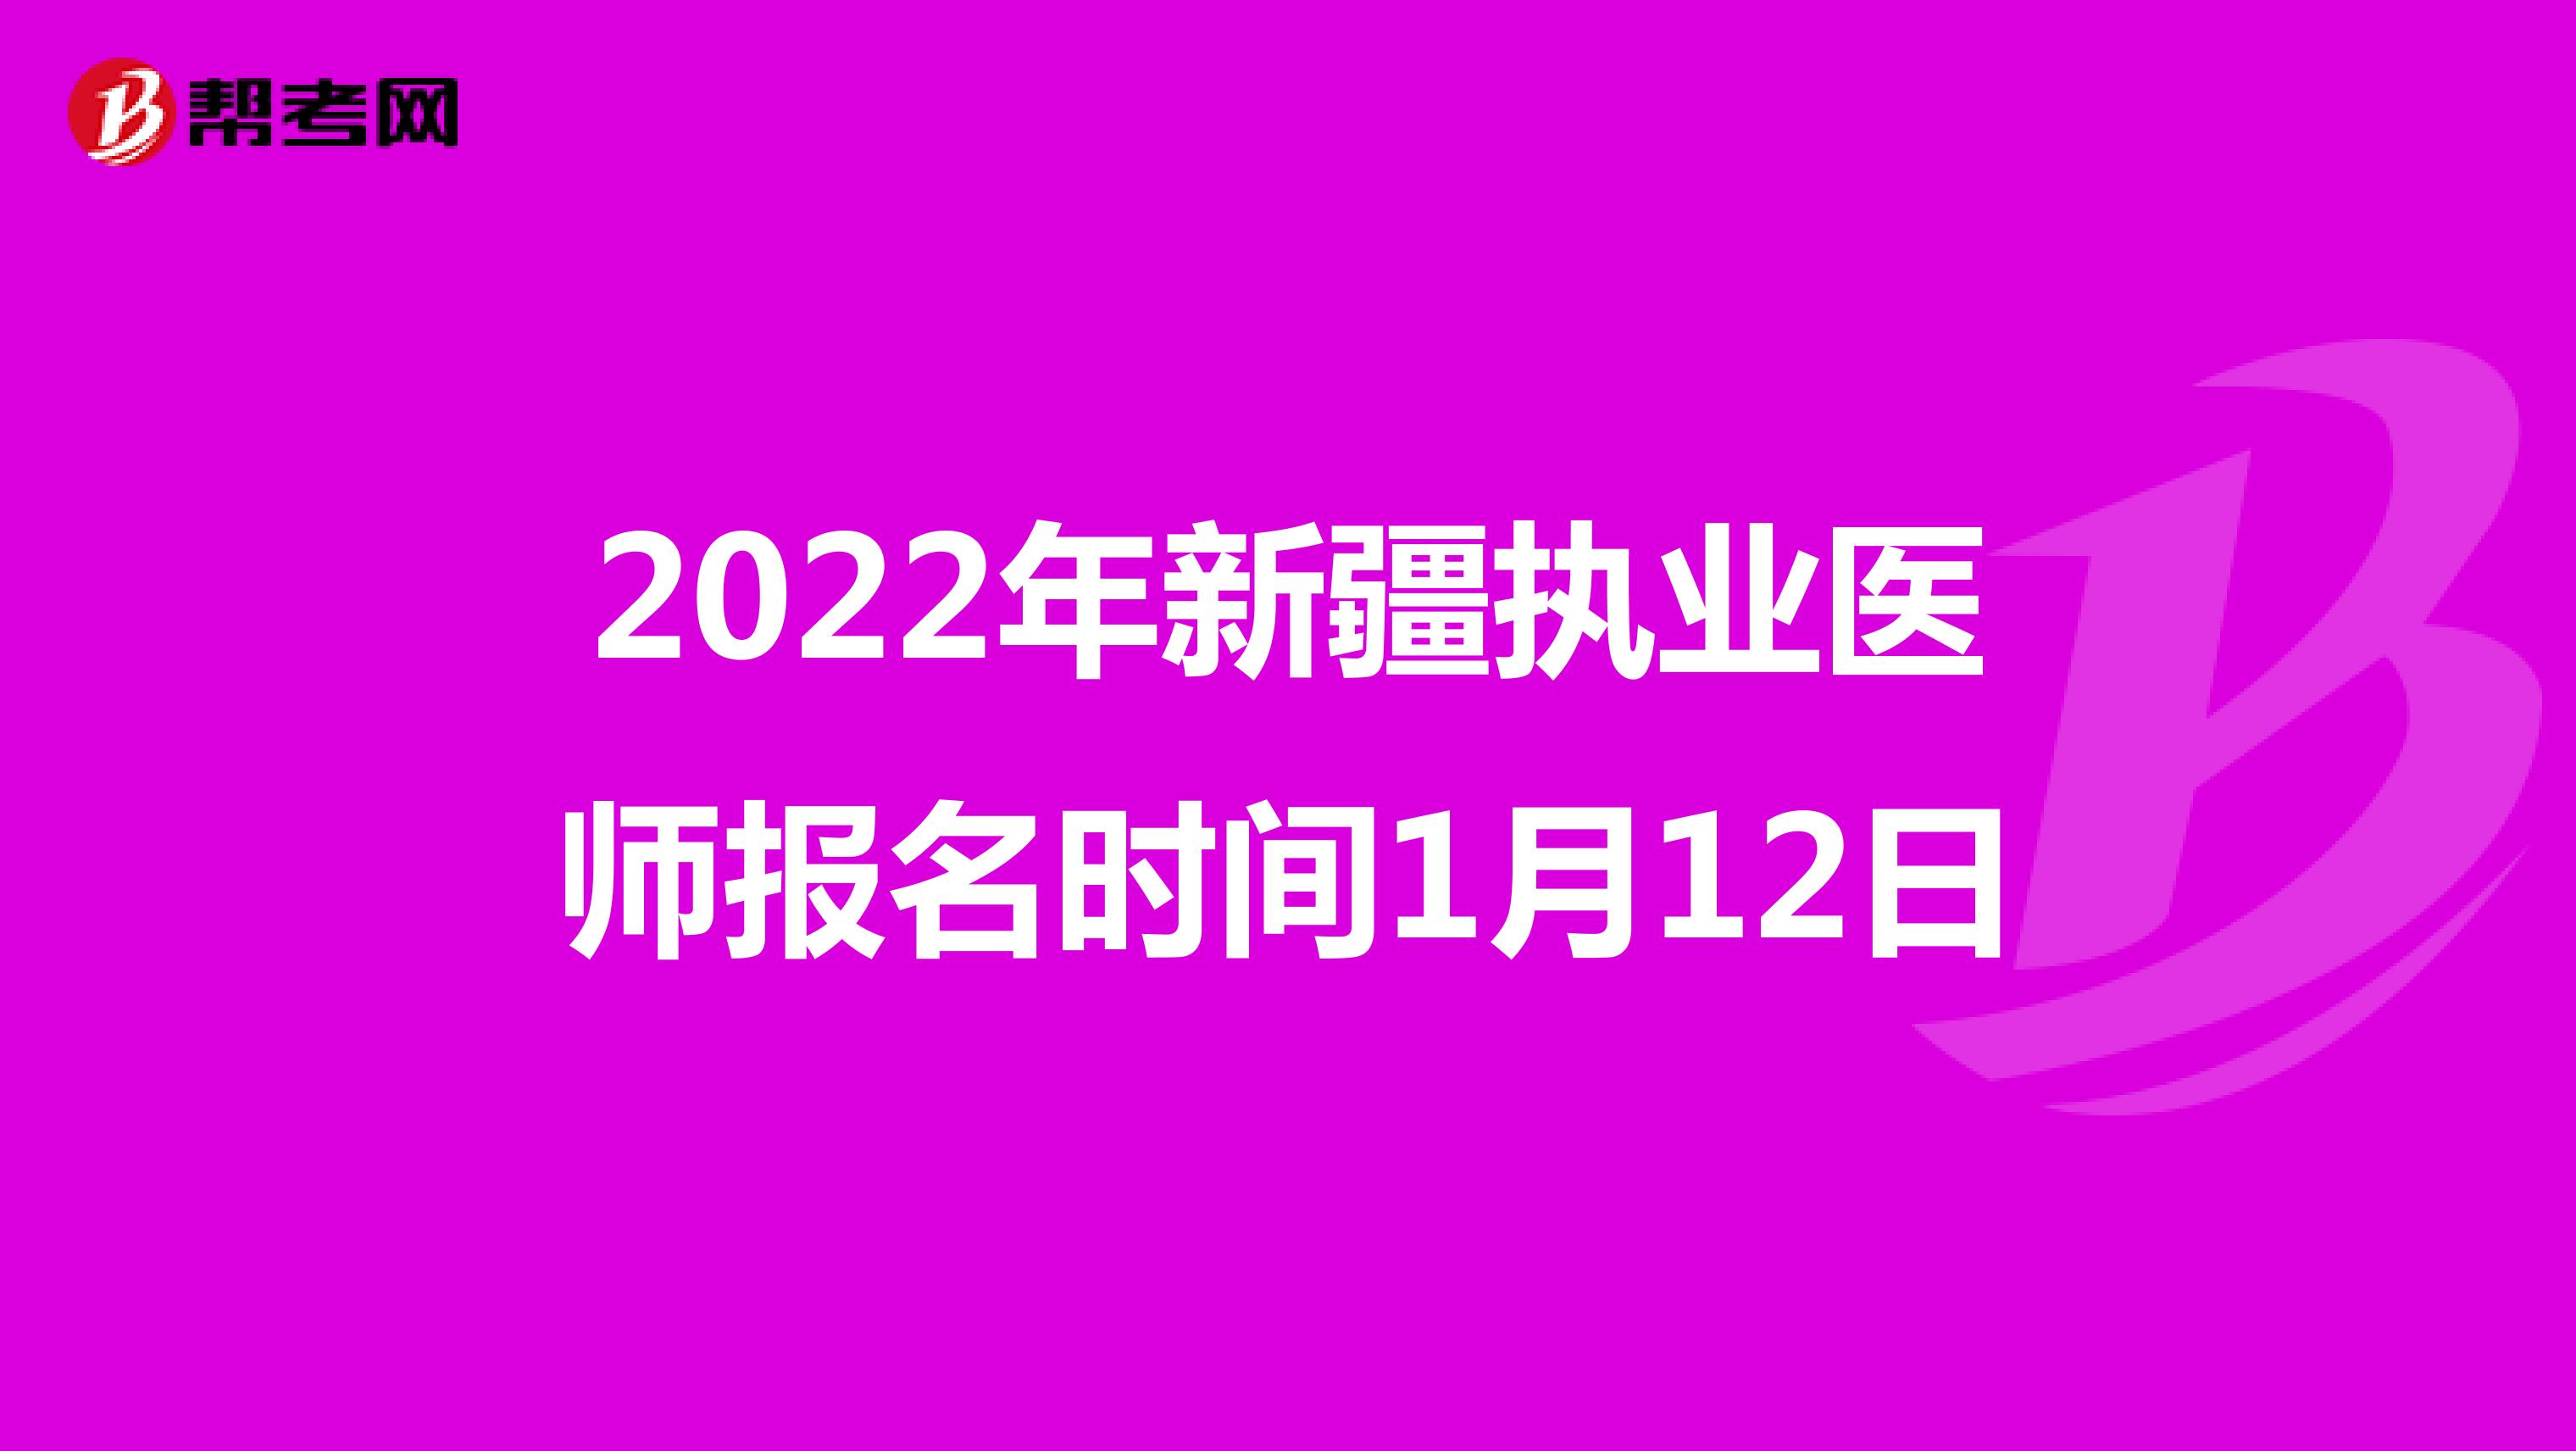 2022年新疆执业医师报名时间1月12日